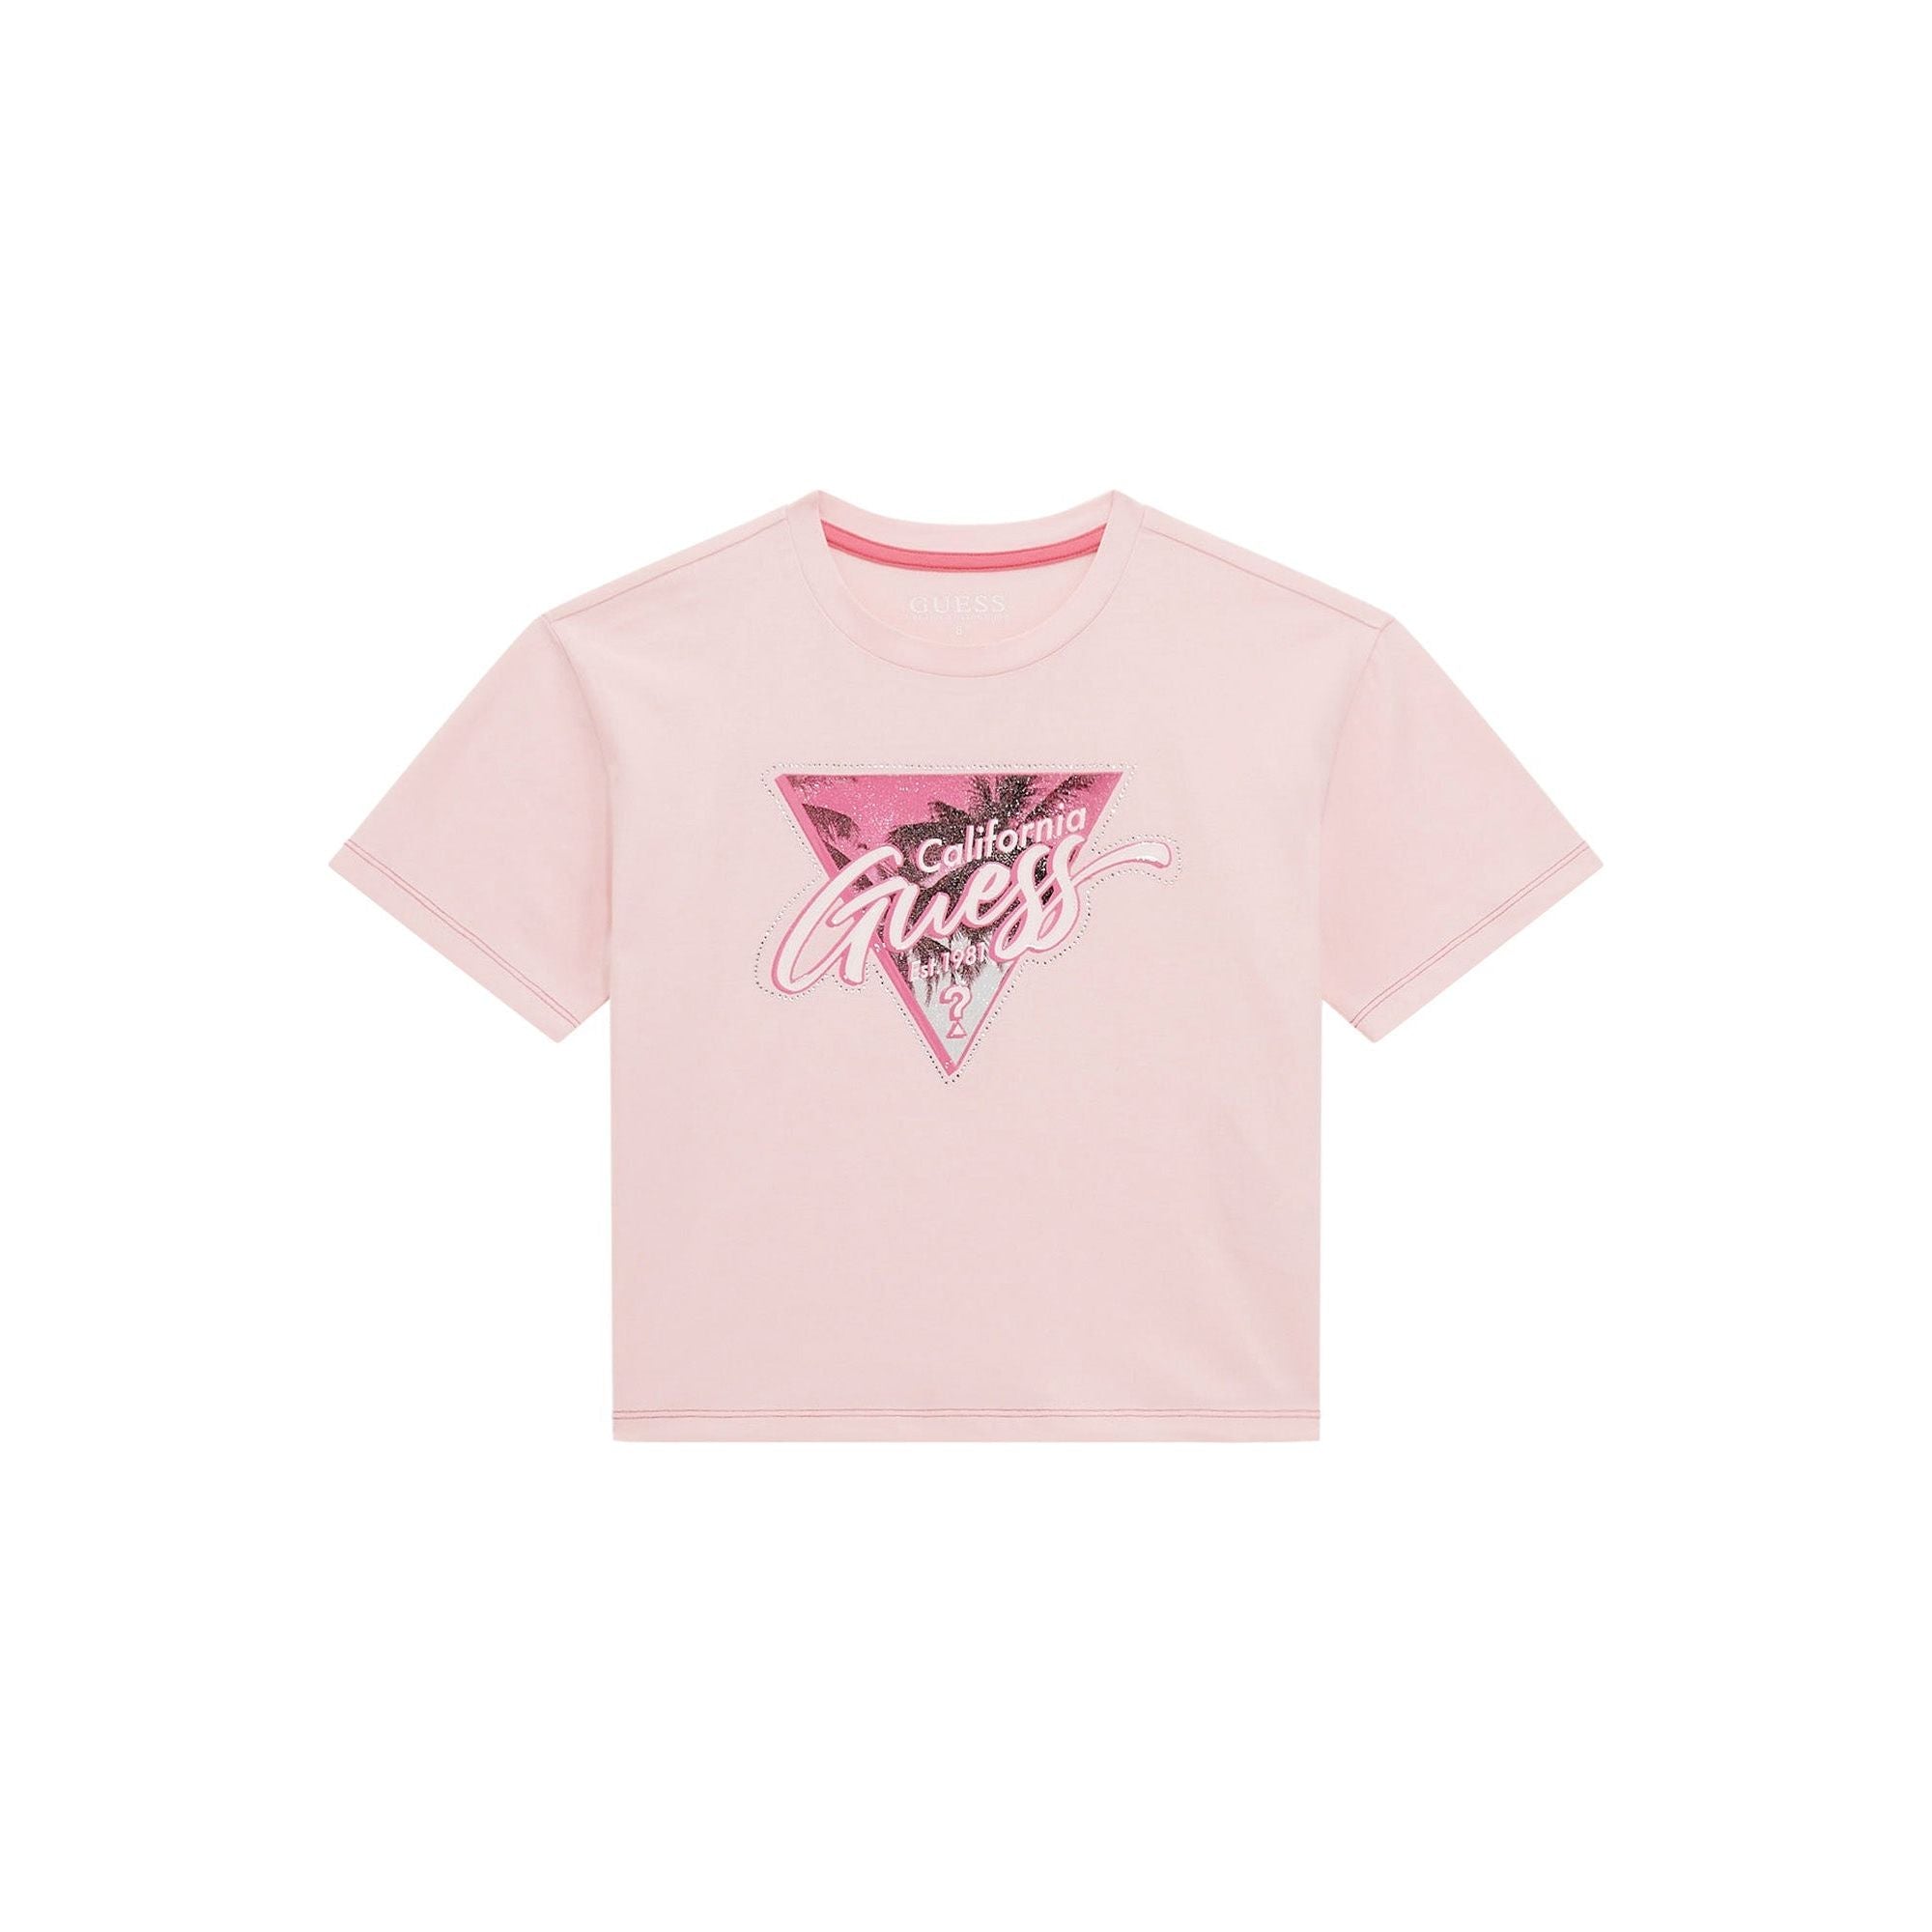 Guess - Girls Crop T-Shirt in Ballet Pink